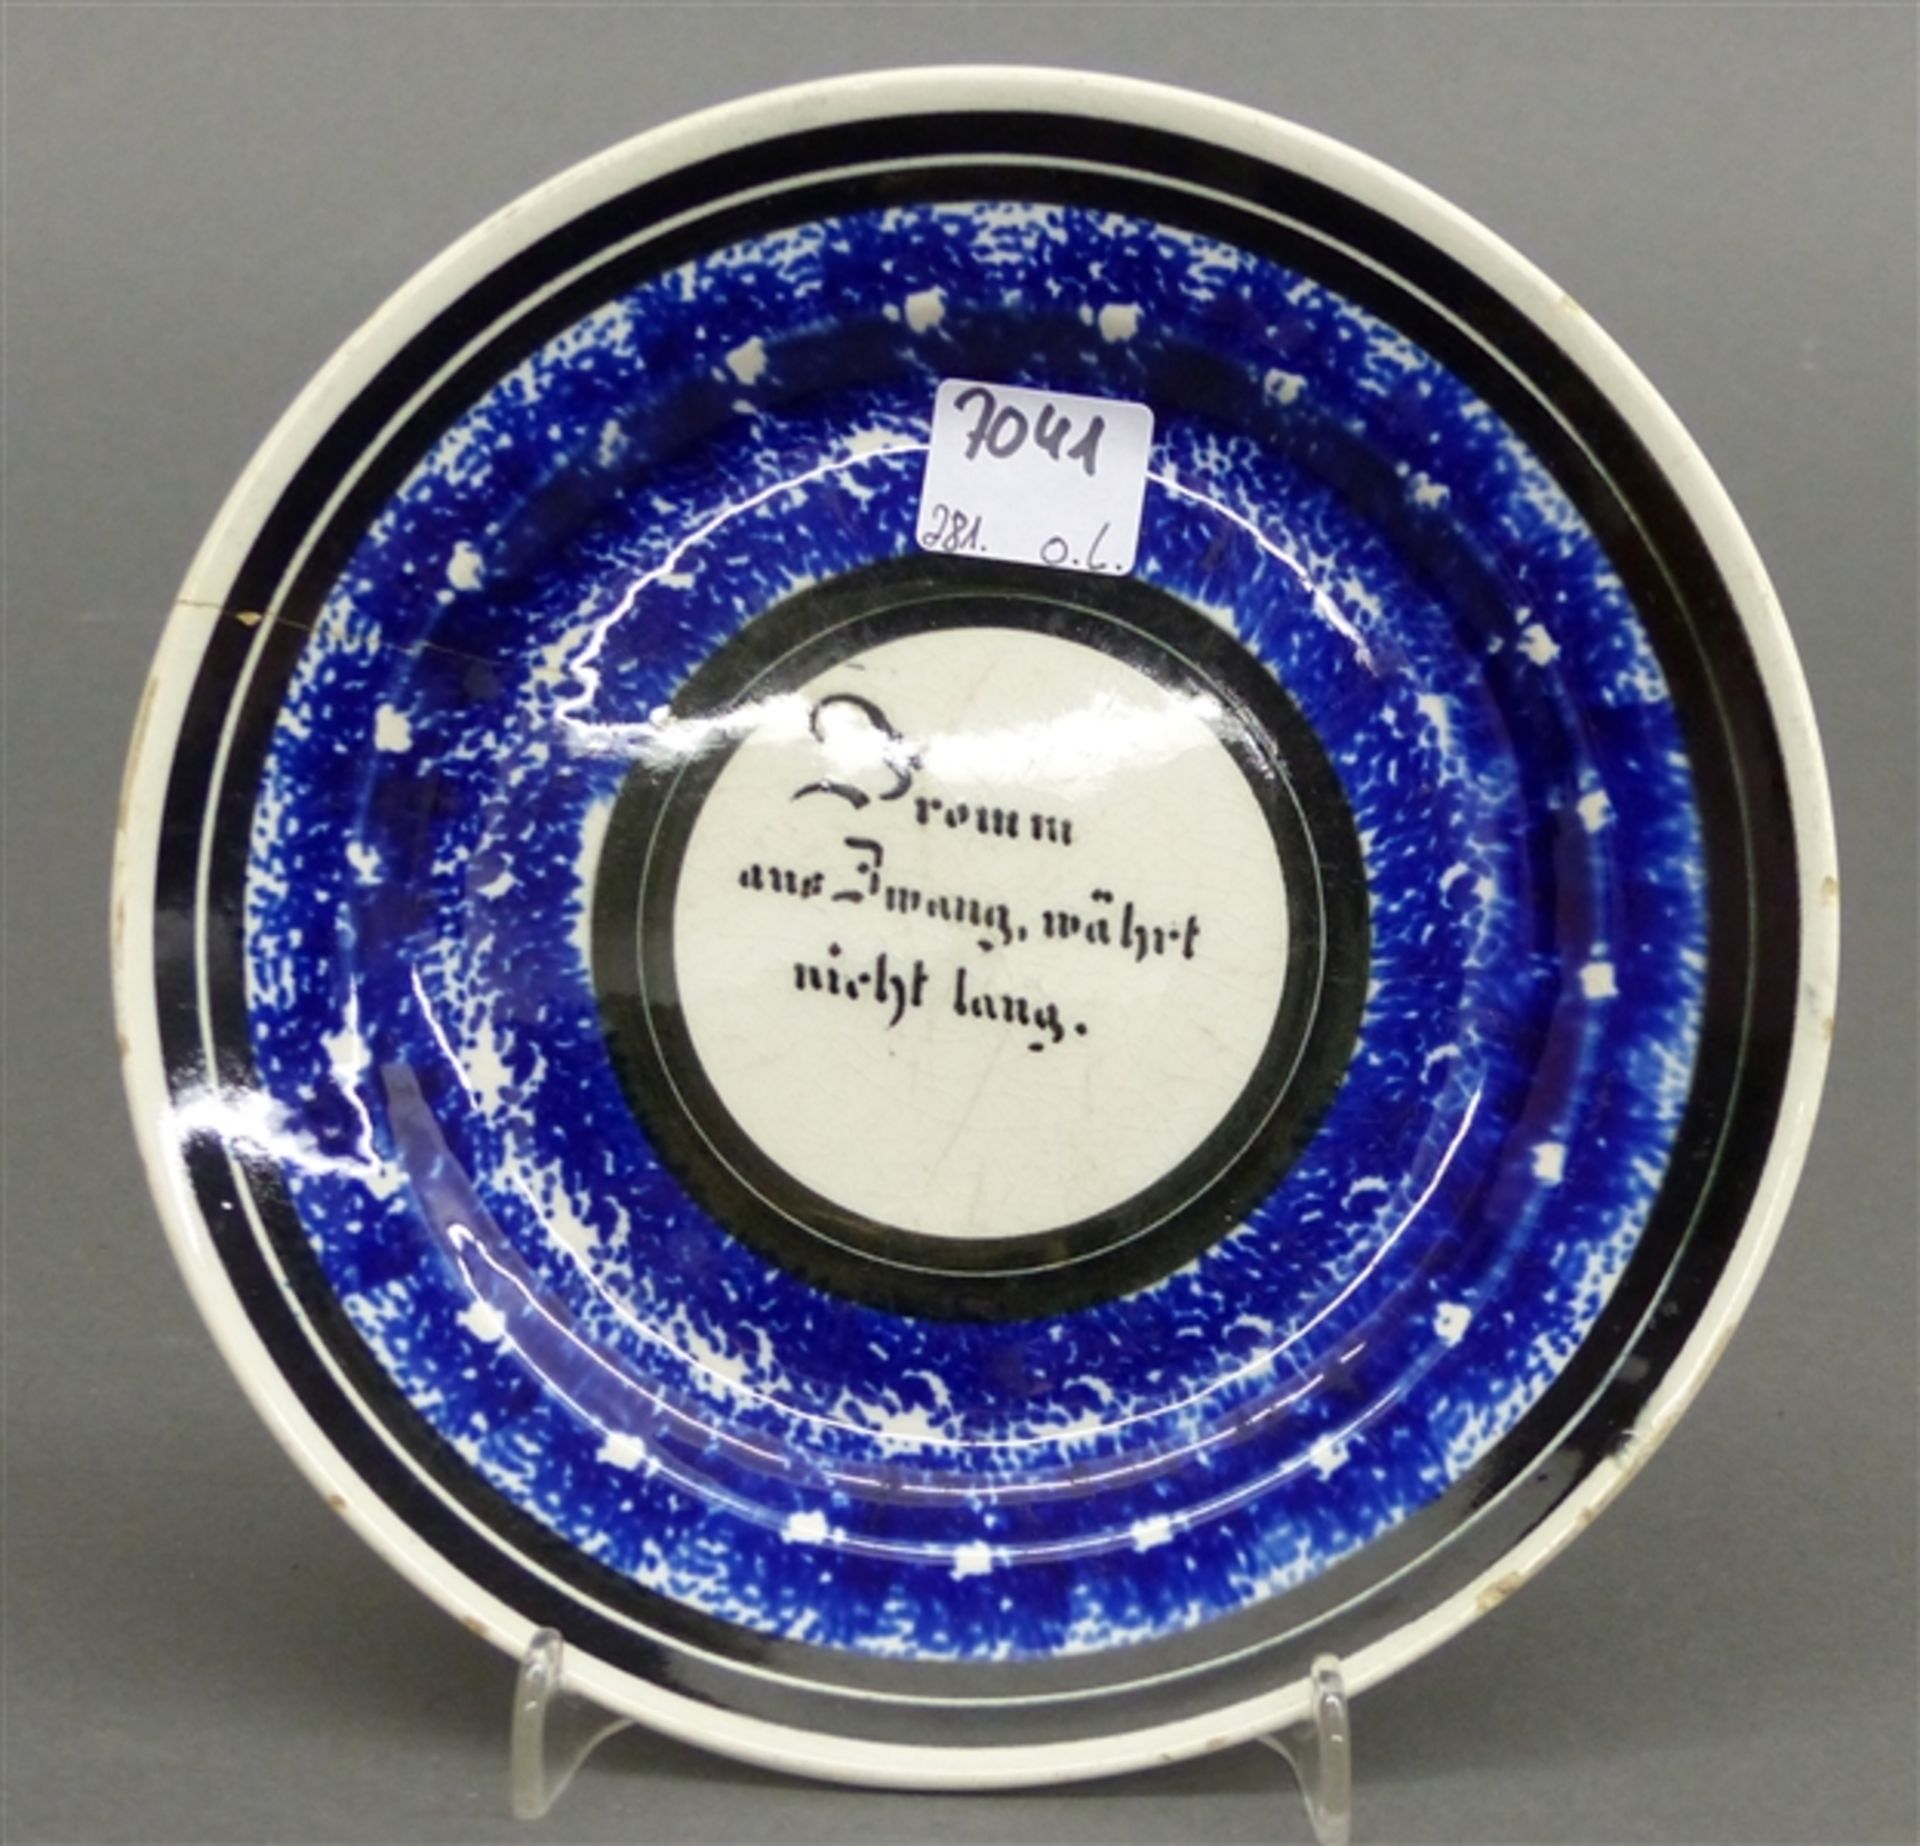 Sinnspruchteller Keramik, blaues Dekor, "Fromm aus Zwang, währt nicht lang" beschädigt, d 18 cm,